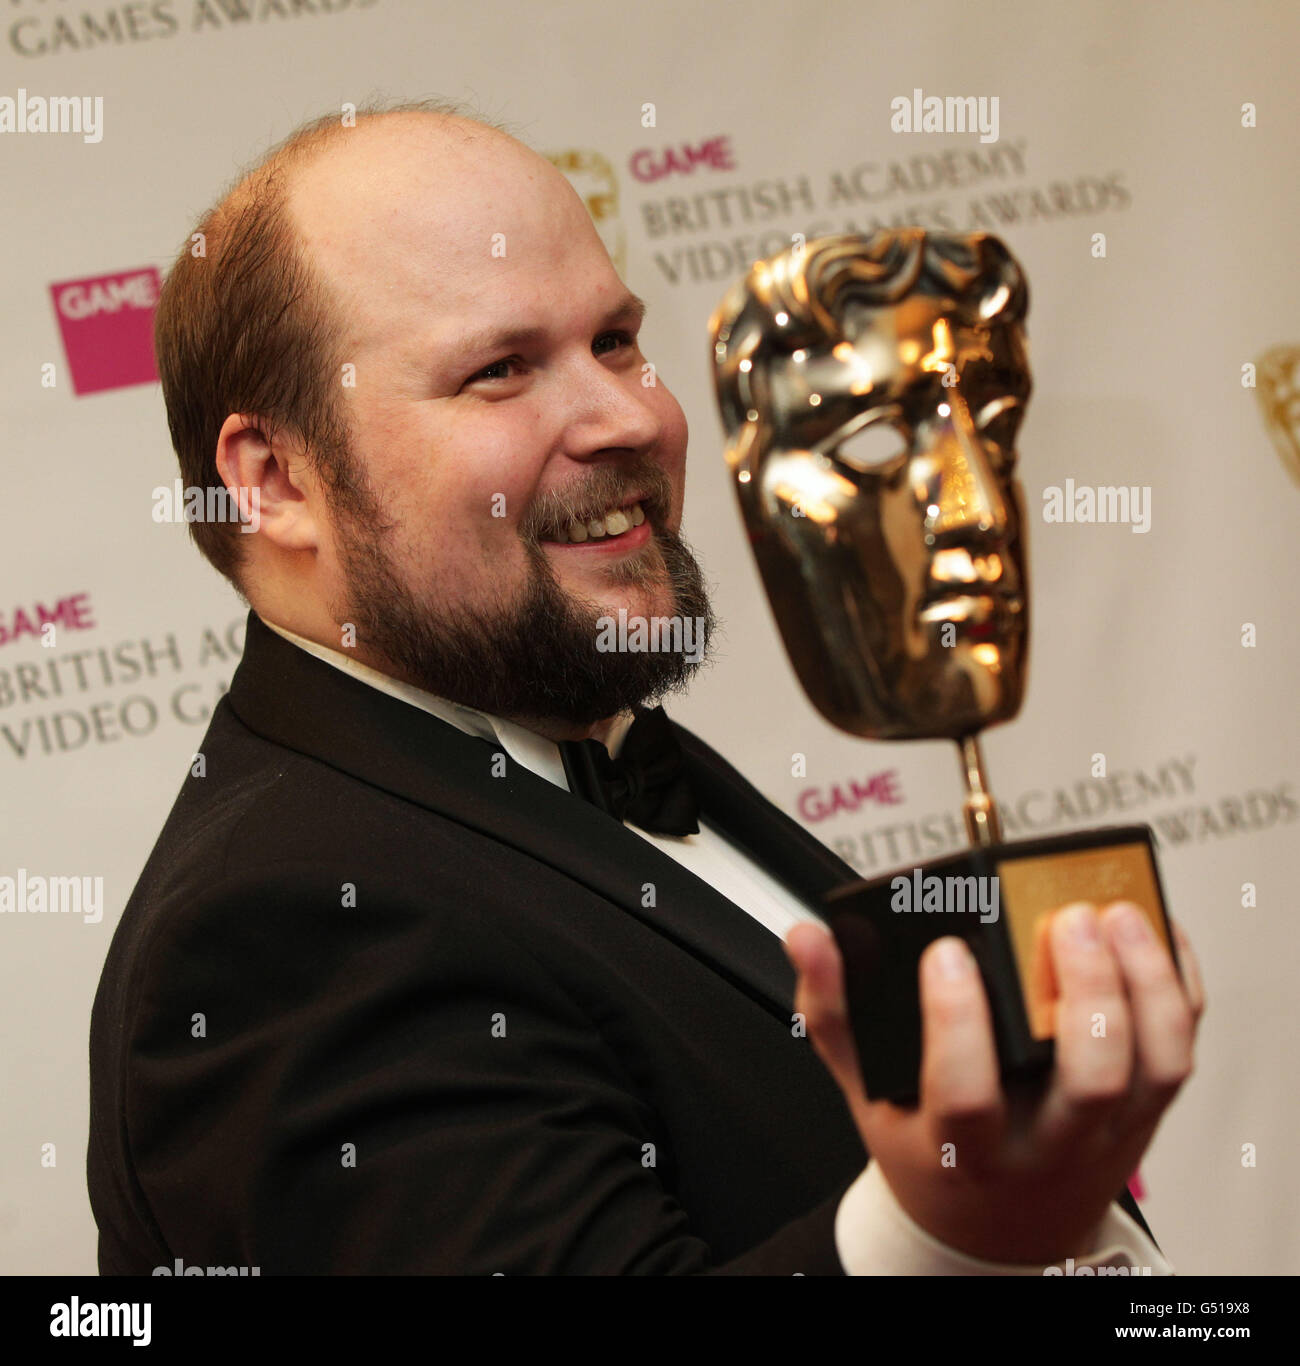 Programmeur et créateur suédois de Minecraft Markus Persson avec son prix spécial au JEU British Academy Video Games Awards au London Hilton, Londres. Banque D'Images